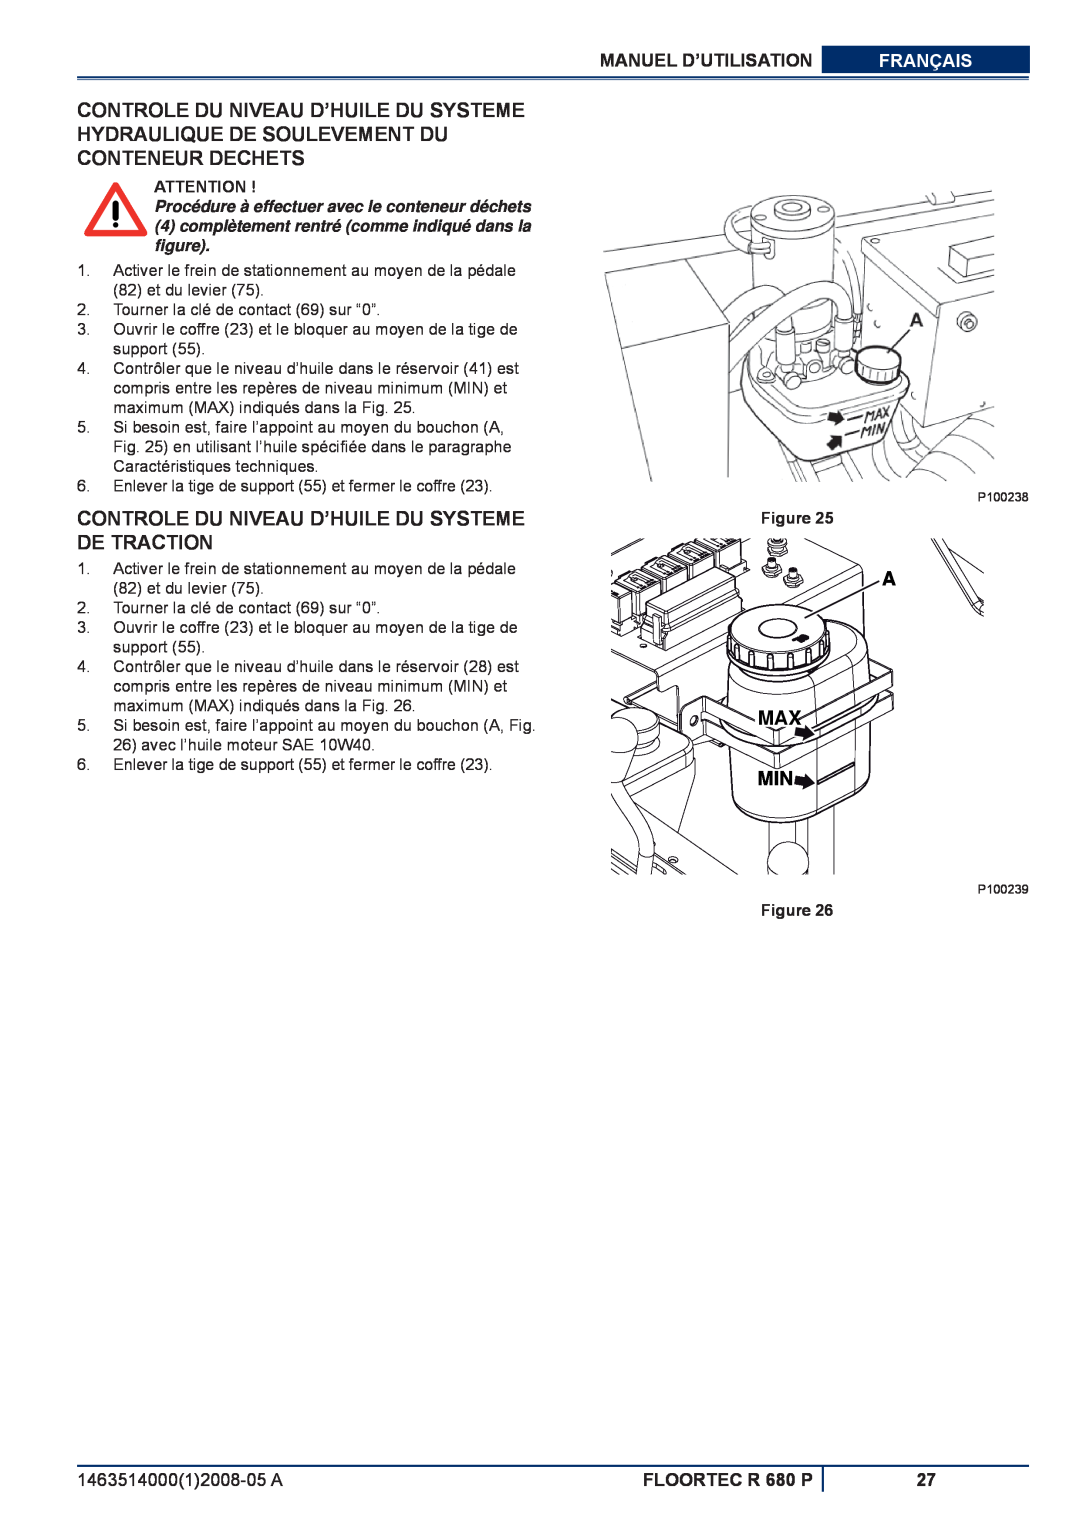 Nilfisk-ALTO R 680 P Controle Du Niveau D’Huile Du Systeme De Traction, A Max Min, Manuel D’Utilisation, Français, Figure 